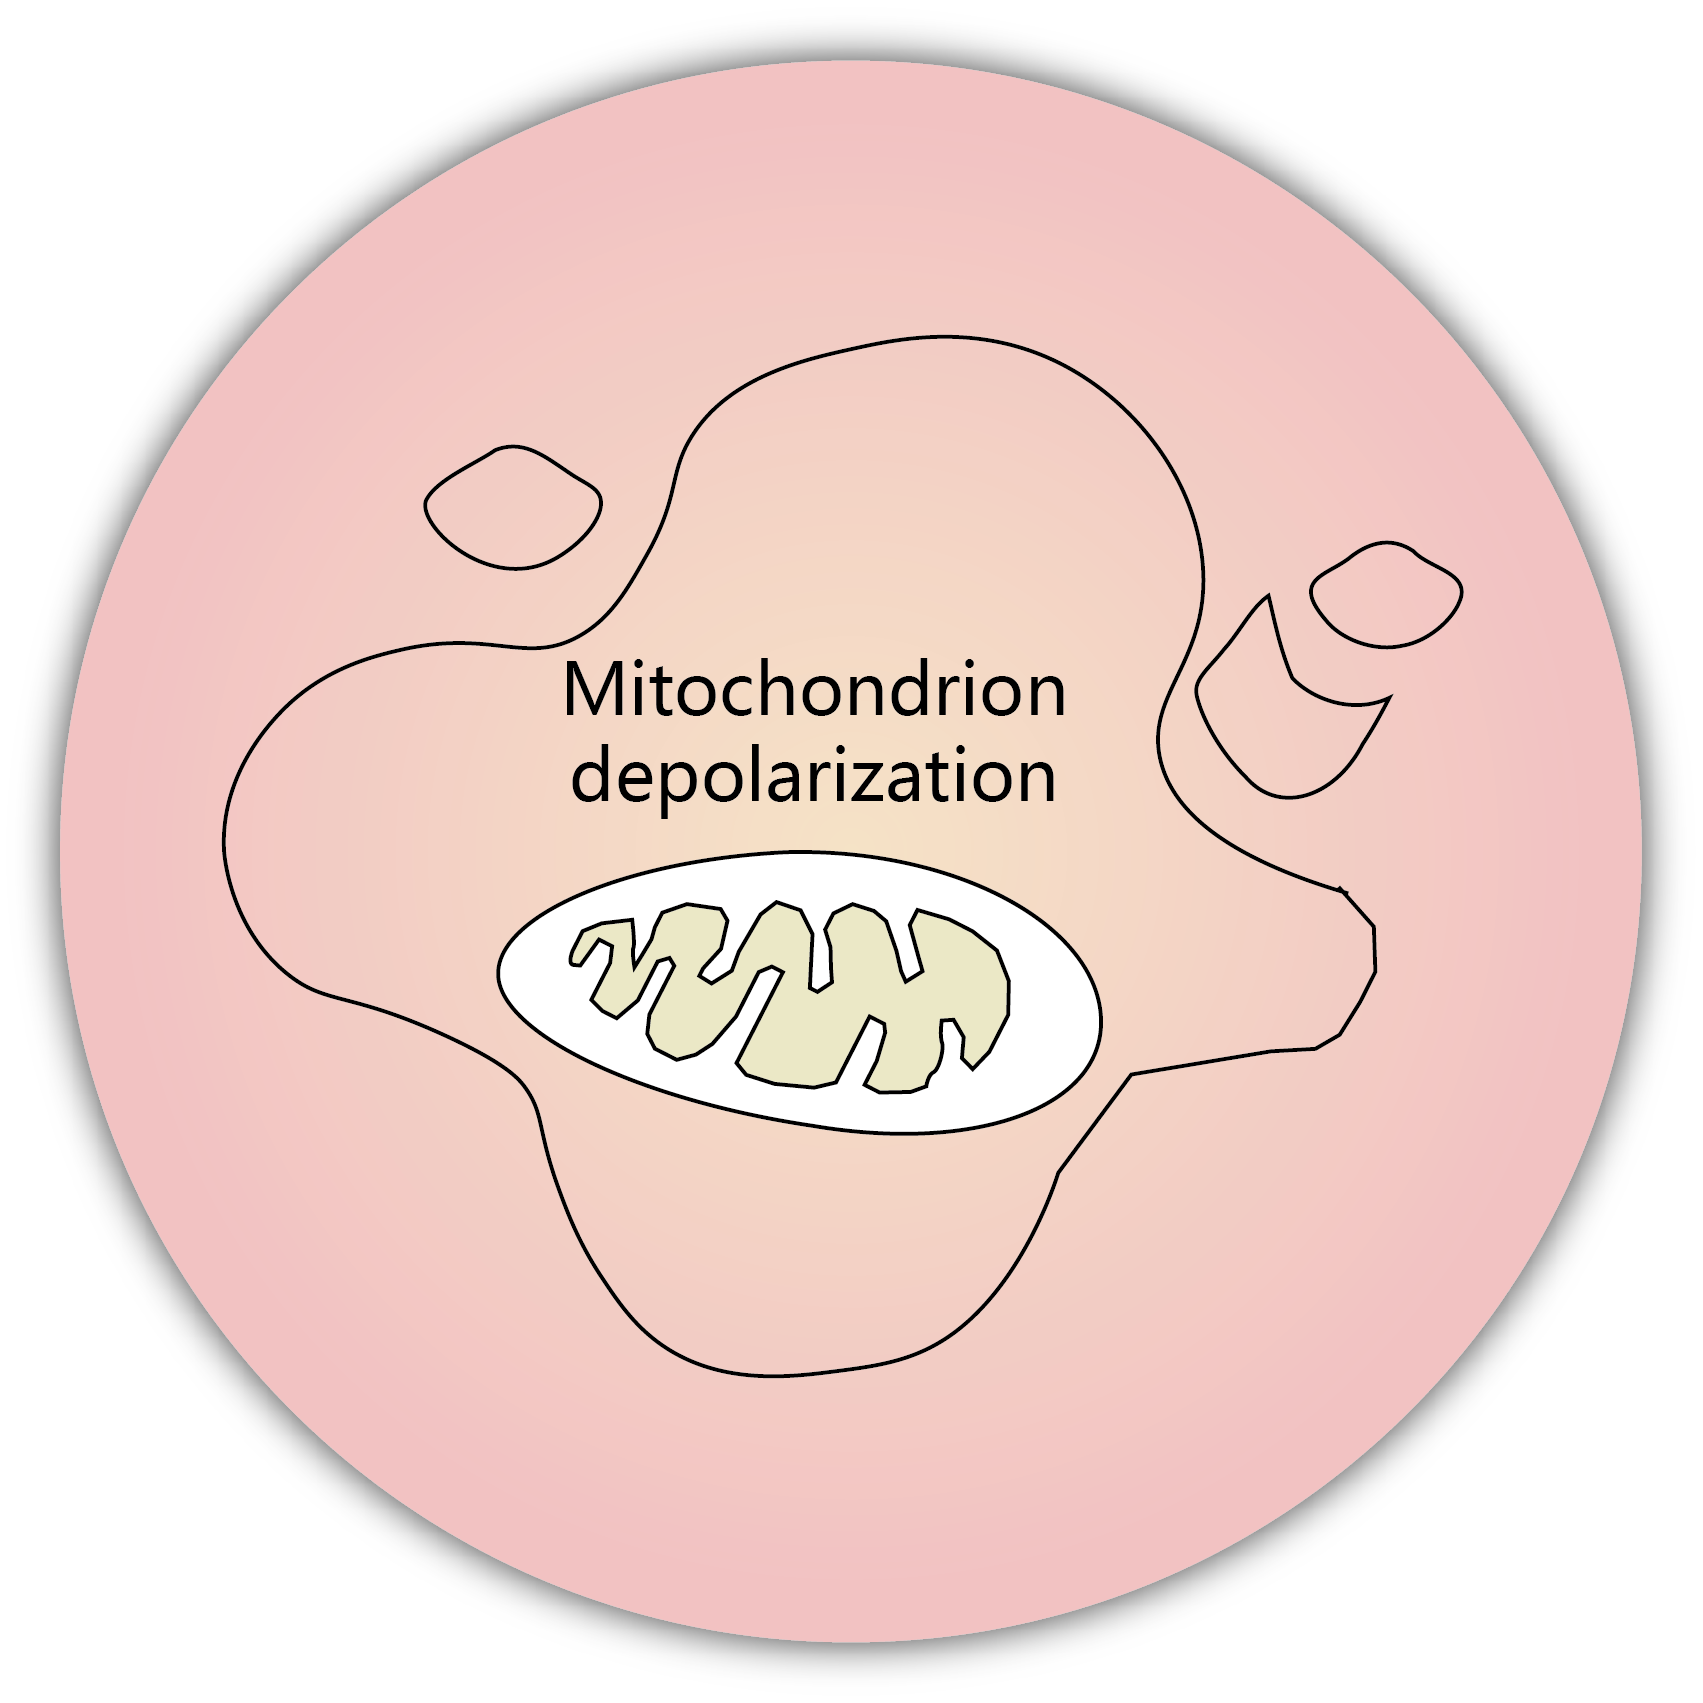 細胞凋亡 apoptosis - mitochondria depolarization